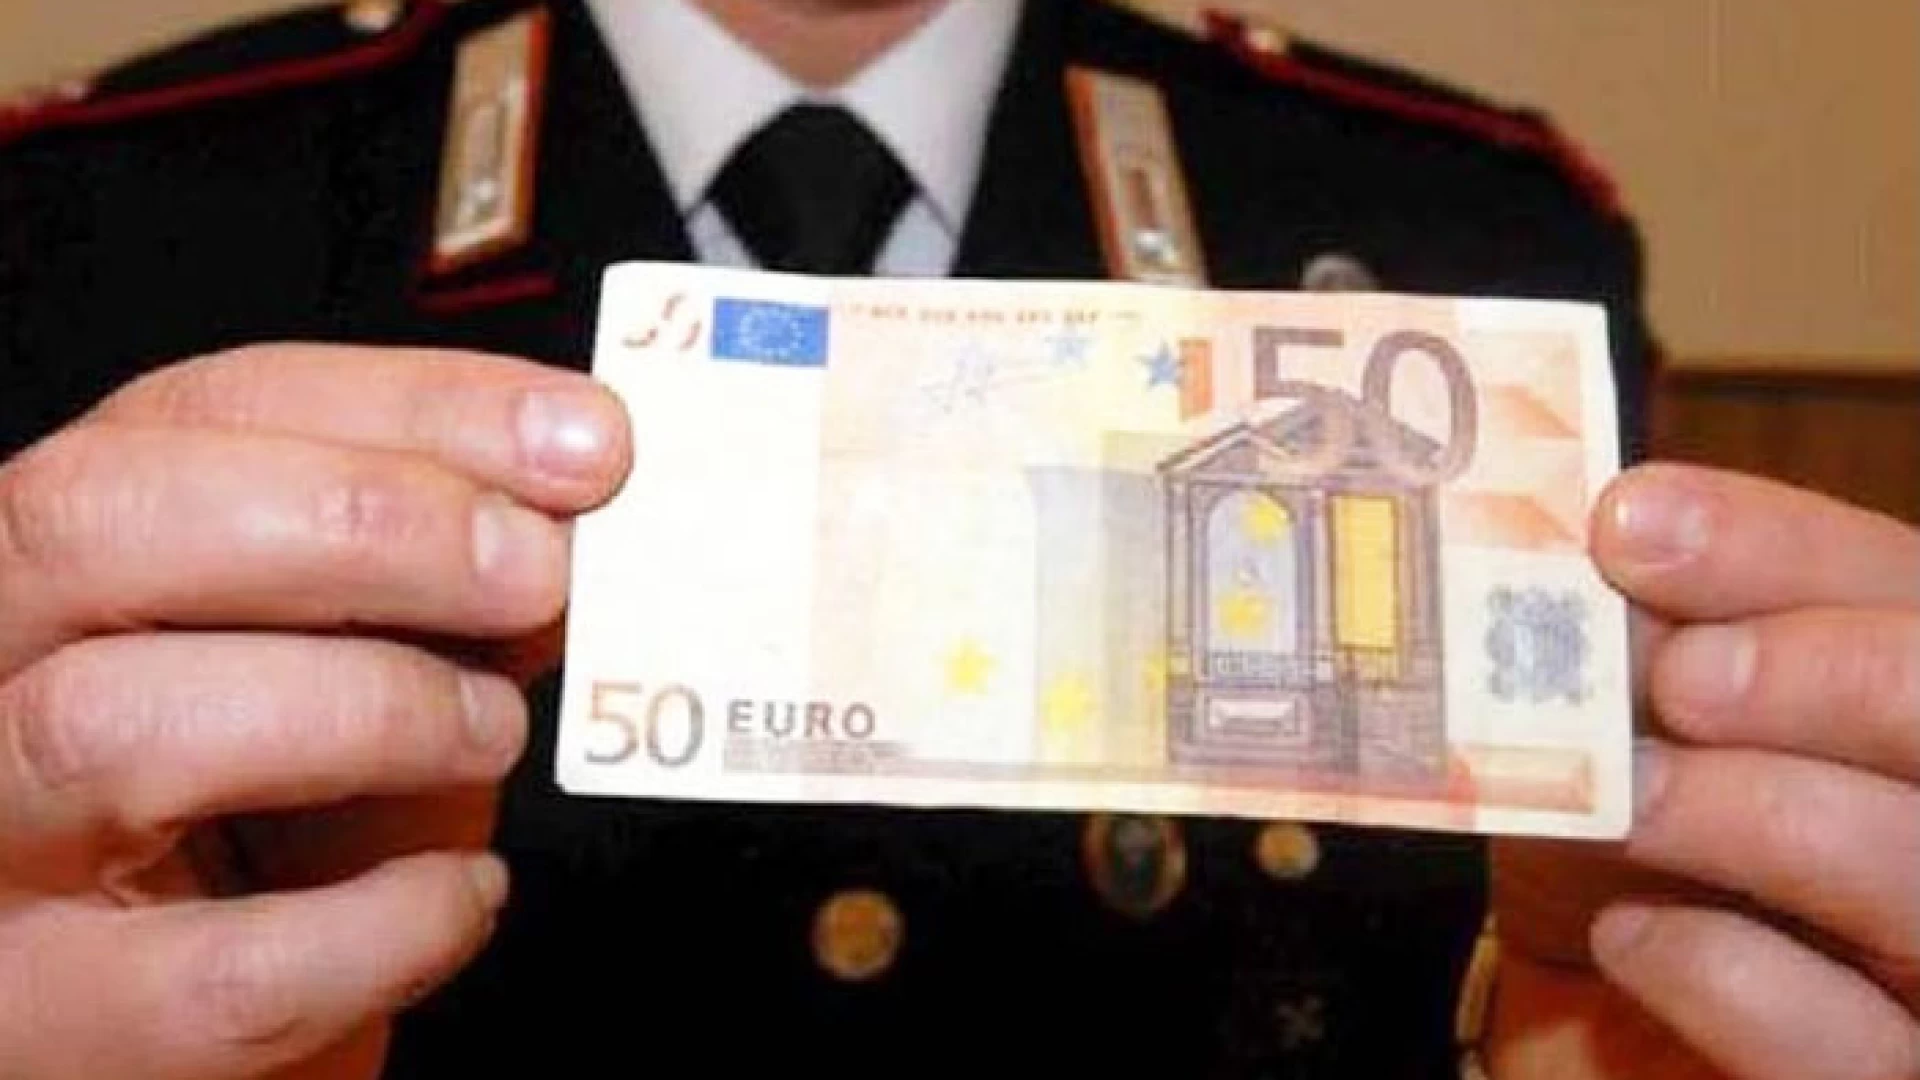 Pescolanciano: Tentano di spacciare banconote false, intervengono i Carabinieri. I consigli dell’Arma contro i raggiri.